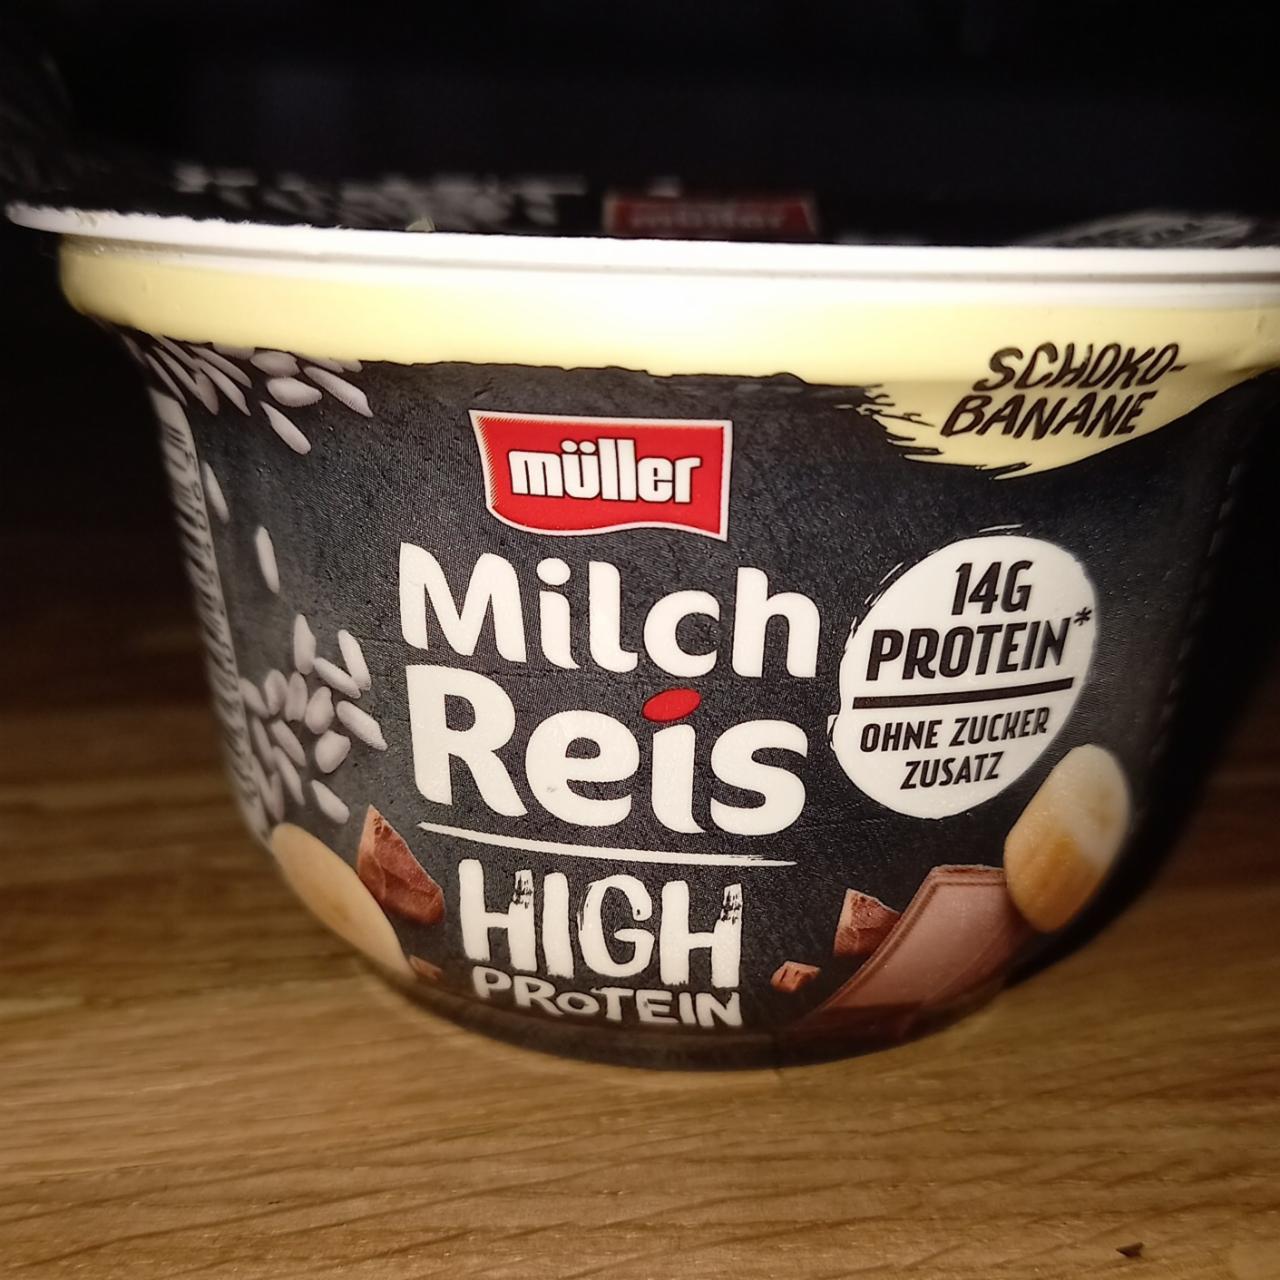 Fotografie - Milch Reis high protein schoko-banane Müller